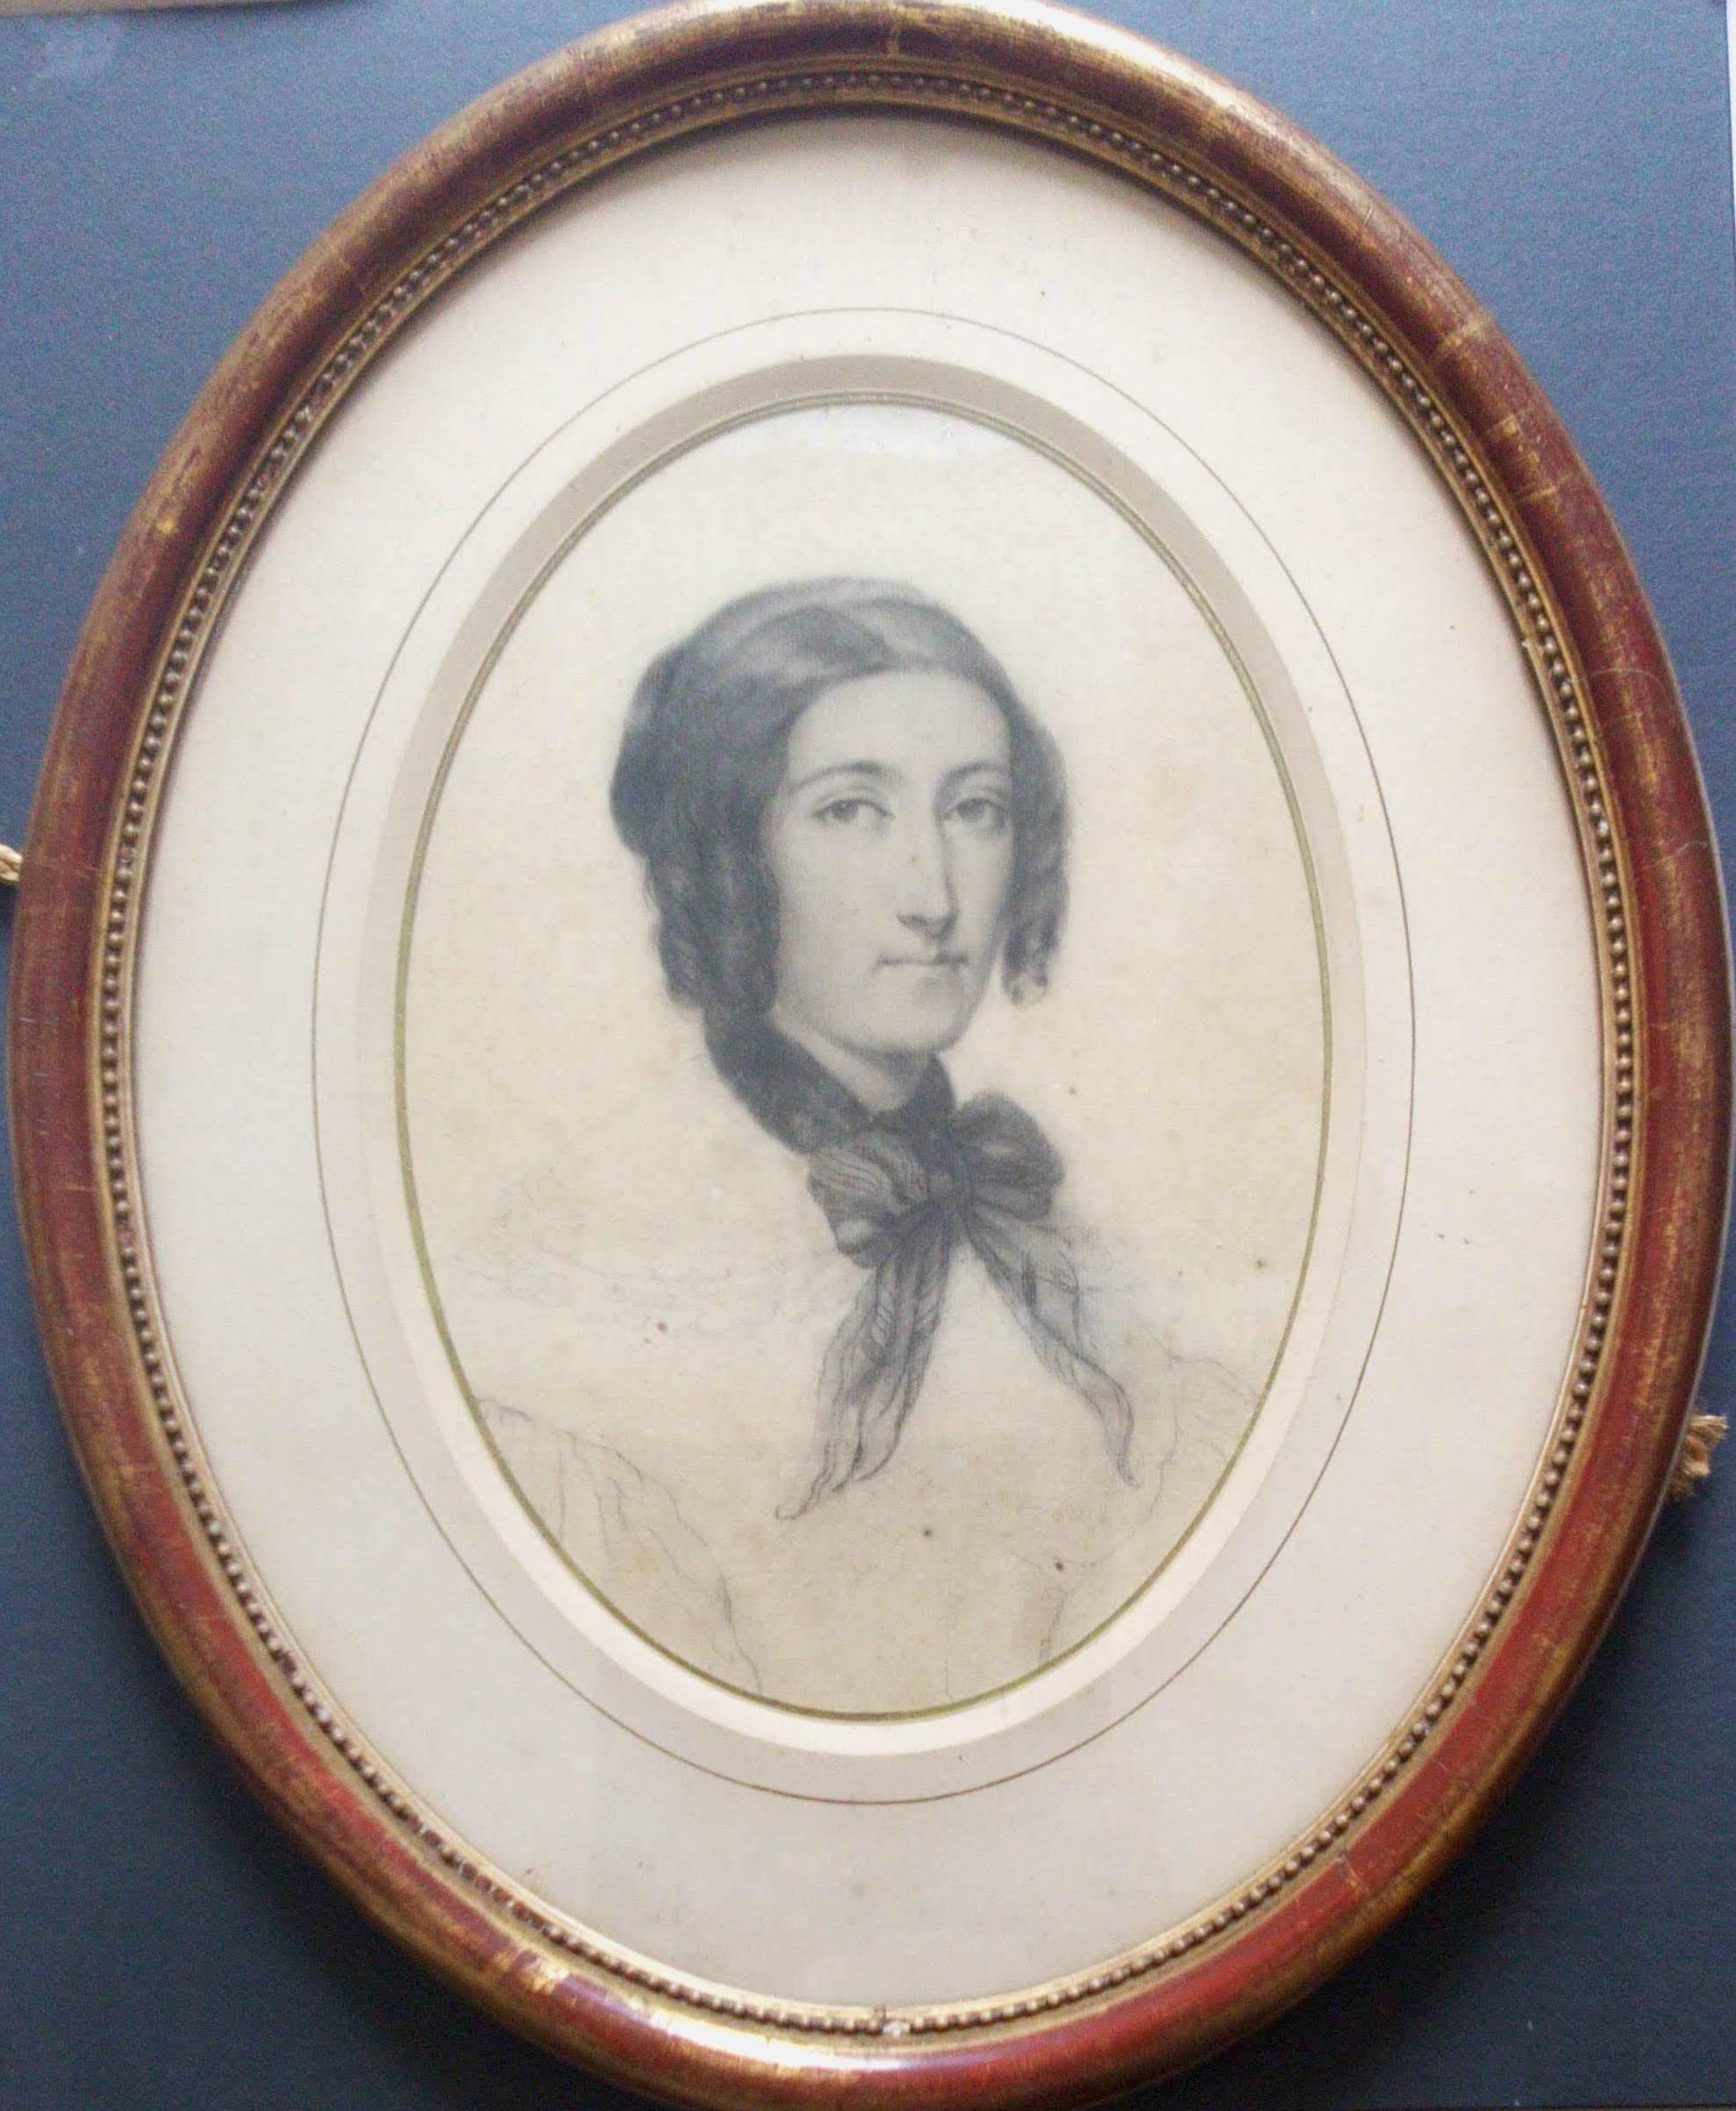 Portrait de dame parisienne Madame Seguin du 19ème siècle de la période romantique française des années 1830 - Académique Art par Adele Grasset